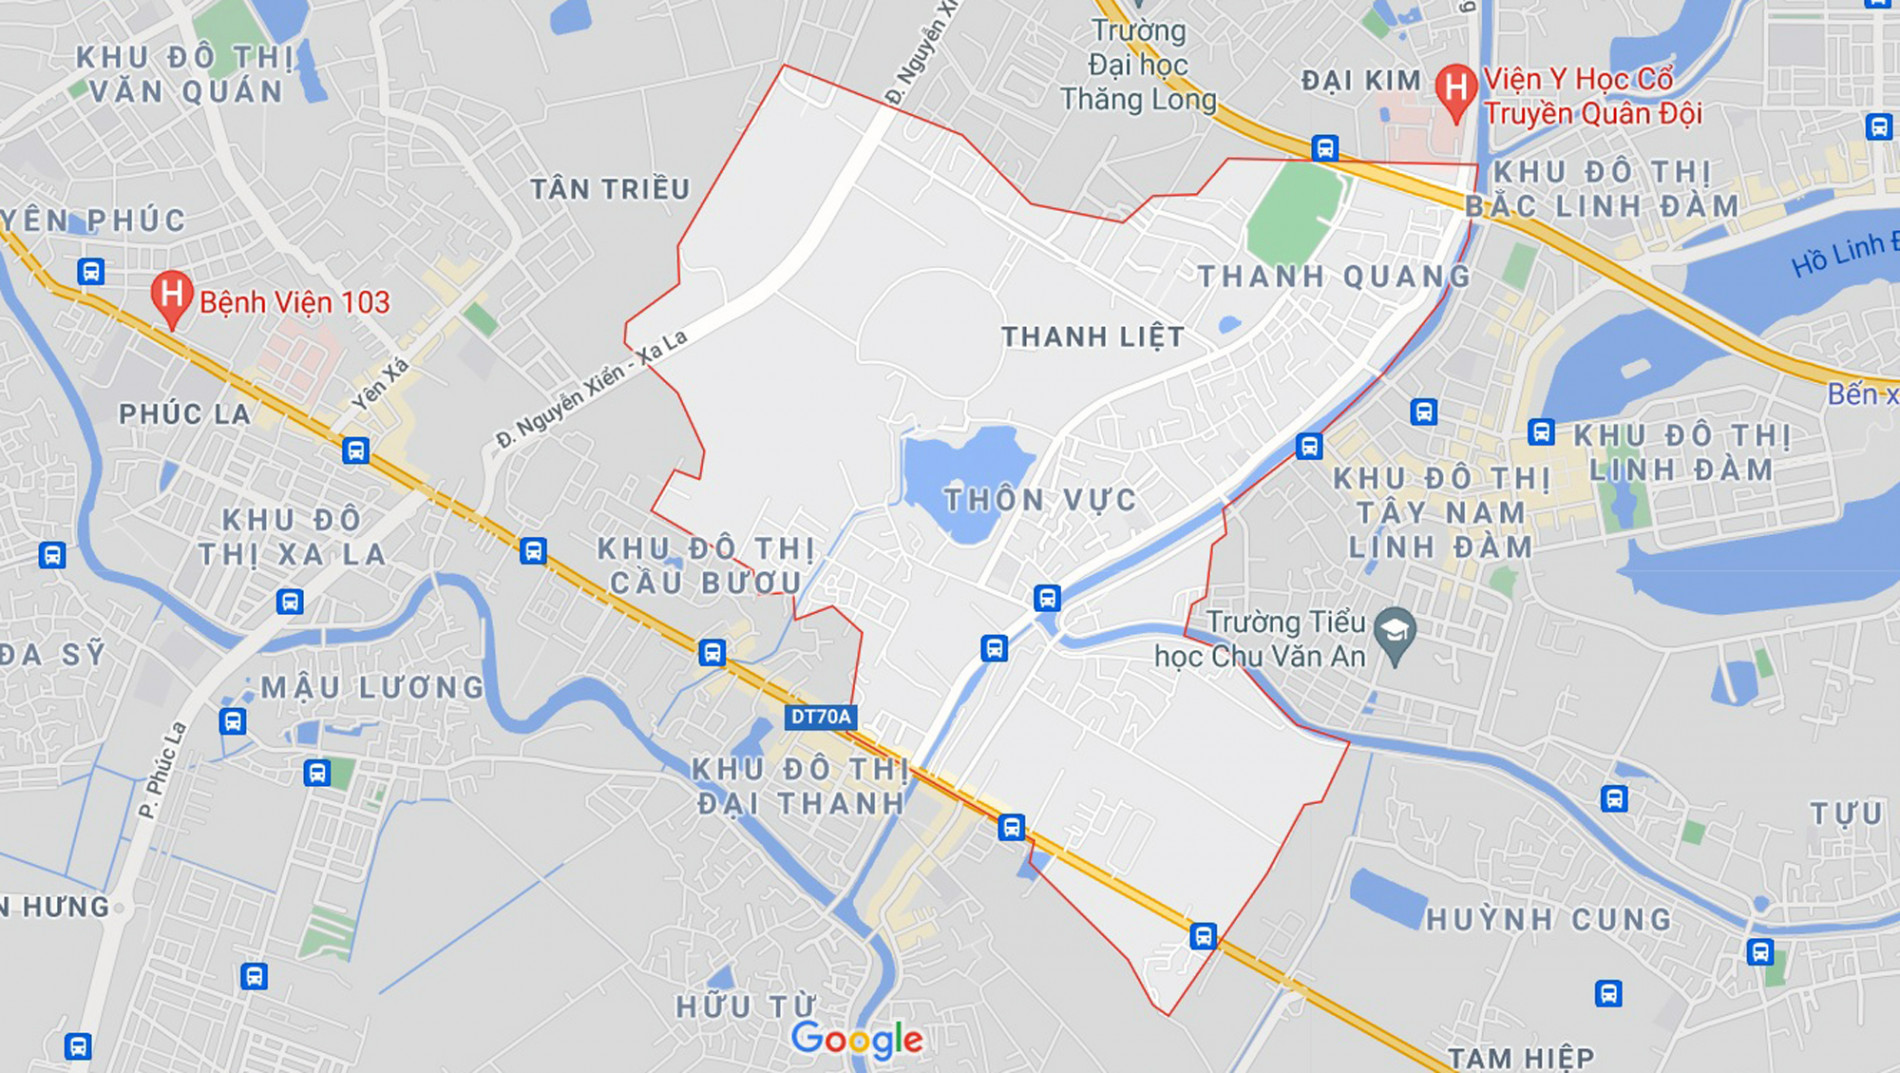 Những khu đất sắp thu hồi để mở đường ở xã Thanh Liệt, Thanh Trì, Hà Nội (phần 6) - Ảnh 1.